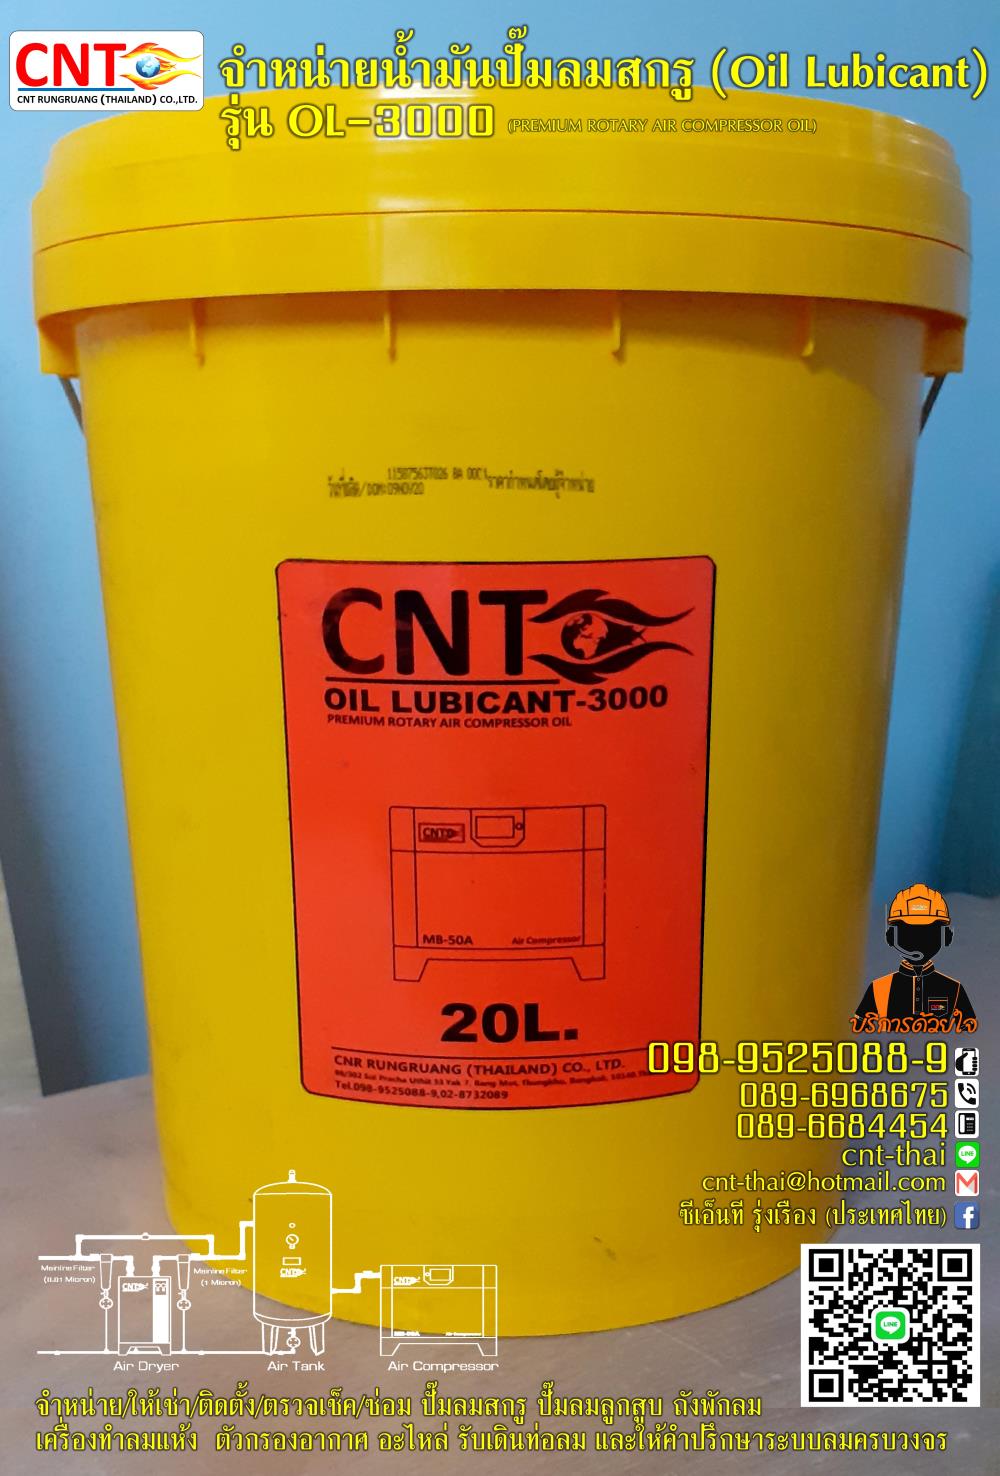 น้ำมันปั๊มลมสกรู (Oil Lubricant) รุ่น OL-3000  เหมาะสำหรับปั๊มลมสกรู ขนาด 7.5-500 แรงม้า Tel.098-9525089,น้ำมันปั๊มลมสกรู (Oil Lubricant) รุ่น OL-3000  เหมาะสำหรับปั๊มลมสกรู ขนาด 7.5-500,Oil Lubricant,Pumps, Valves and Accessories/Pumps/Air Pumps